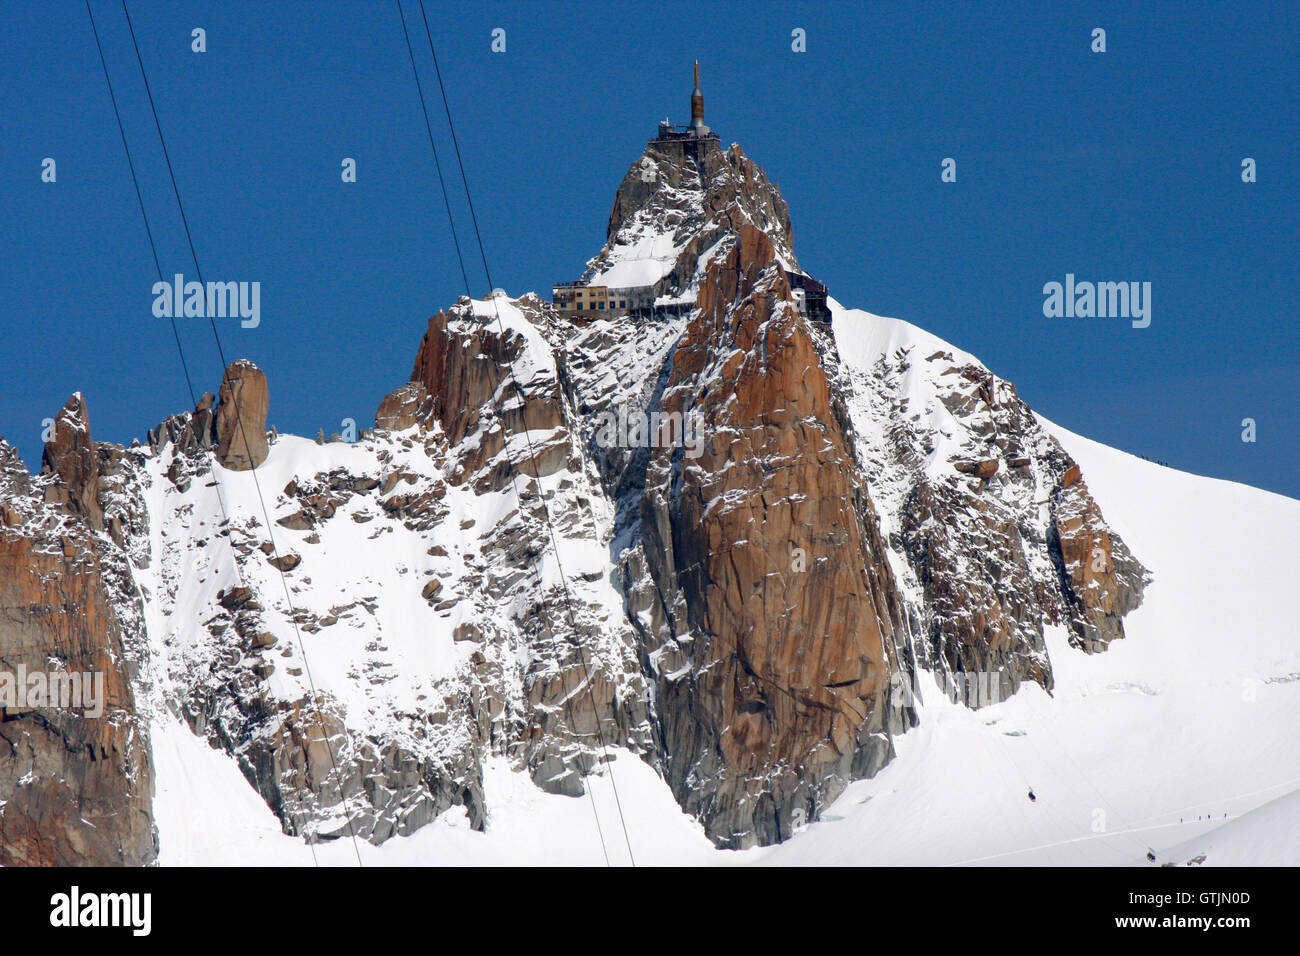 Impressionen: Aiguille du Midi, Mont Blanc-Massiv, Chamonix, Frankreich. Stock Photo